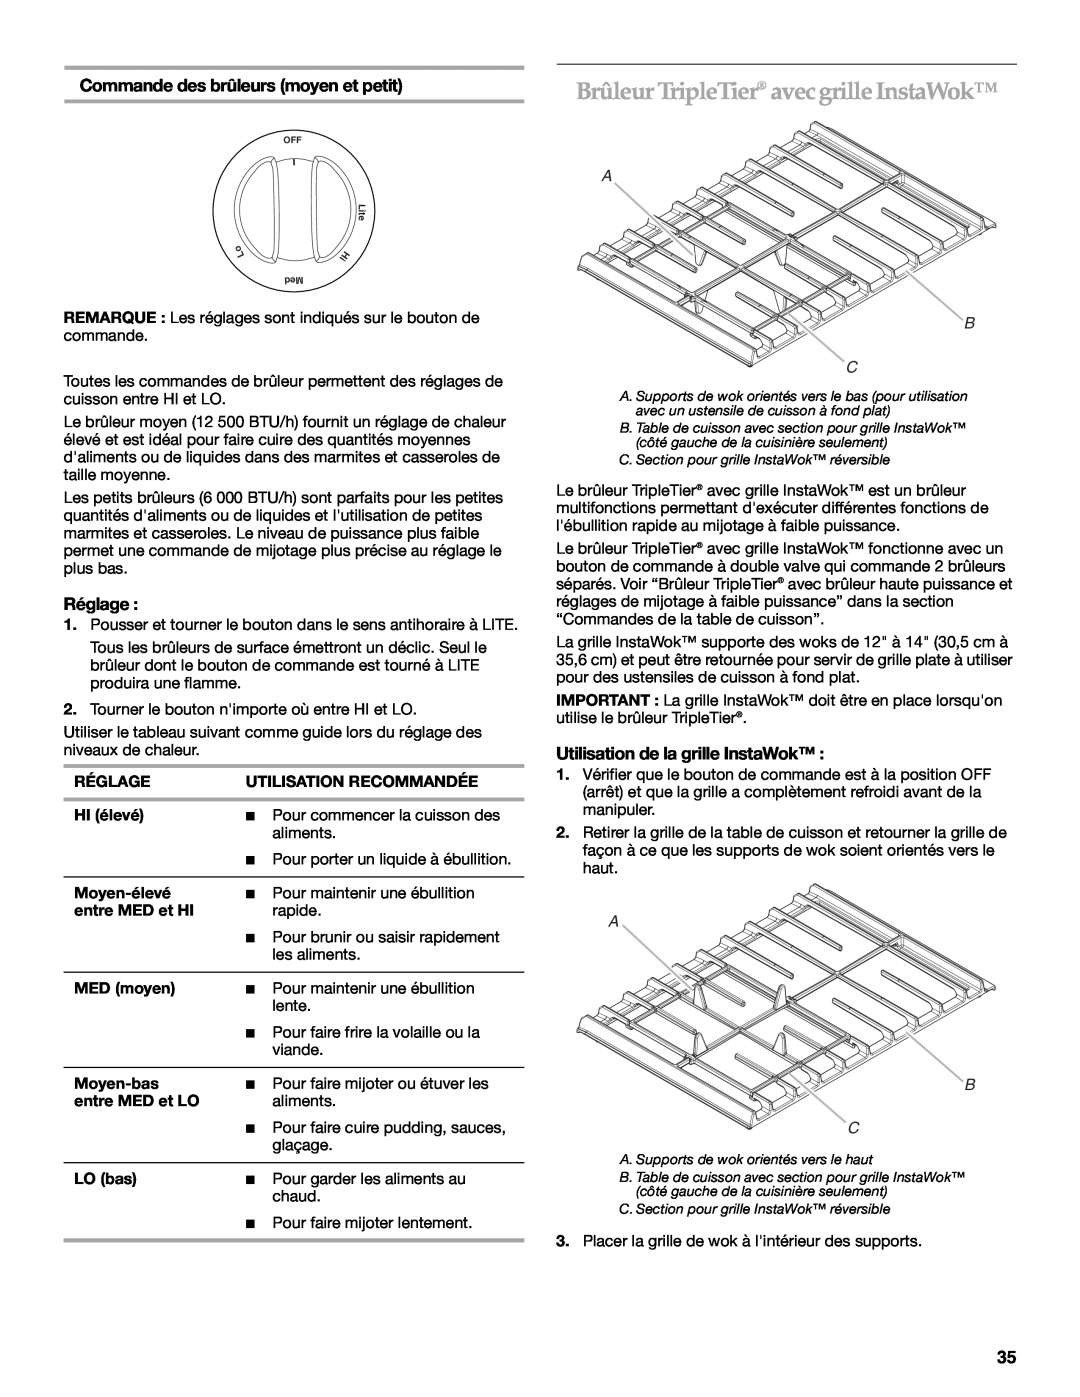 KitchenAid KDRS807 manual Brûleur TripleTier avecgrille InstaWok, Commande des brûleurs moyen et petit, Réglage, A B C 